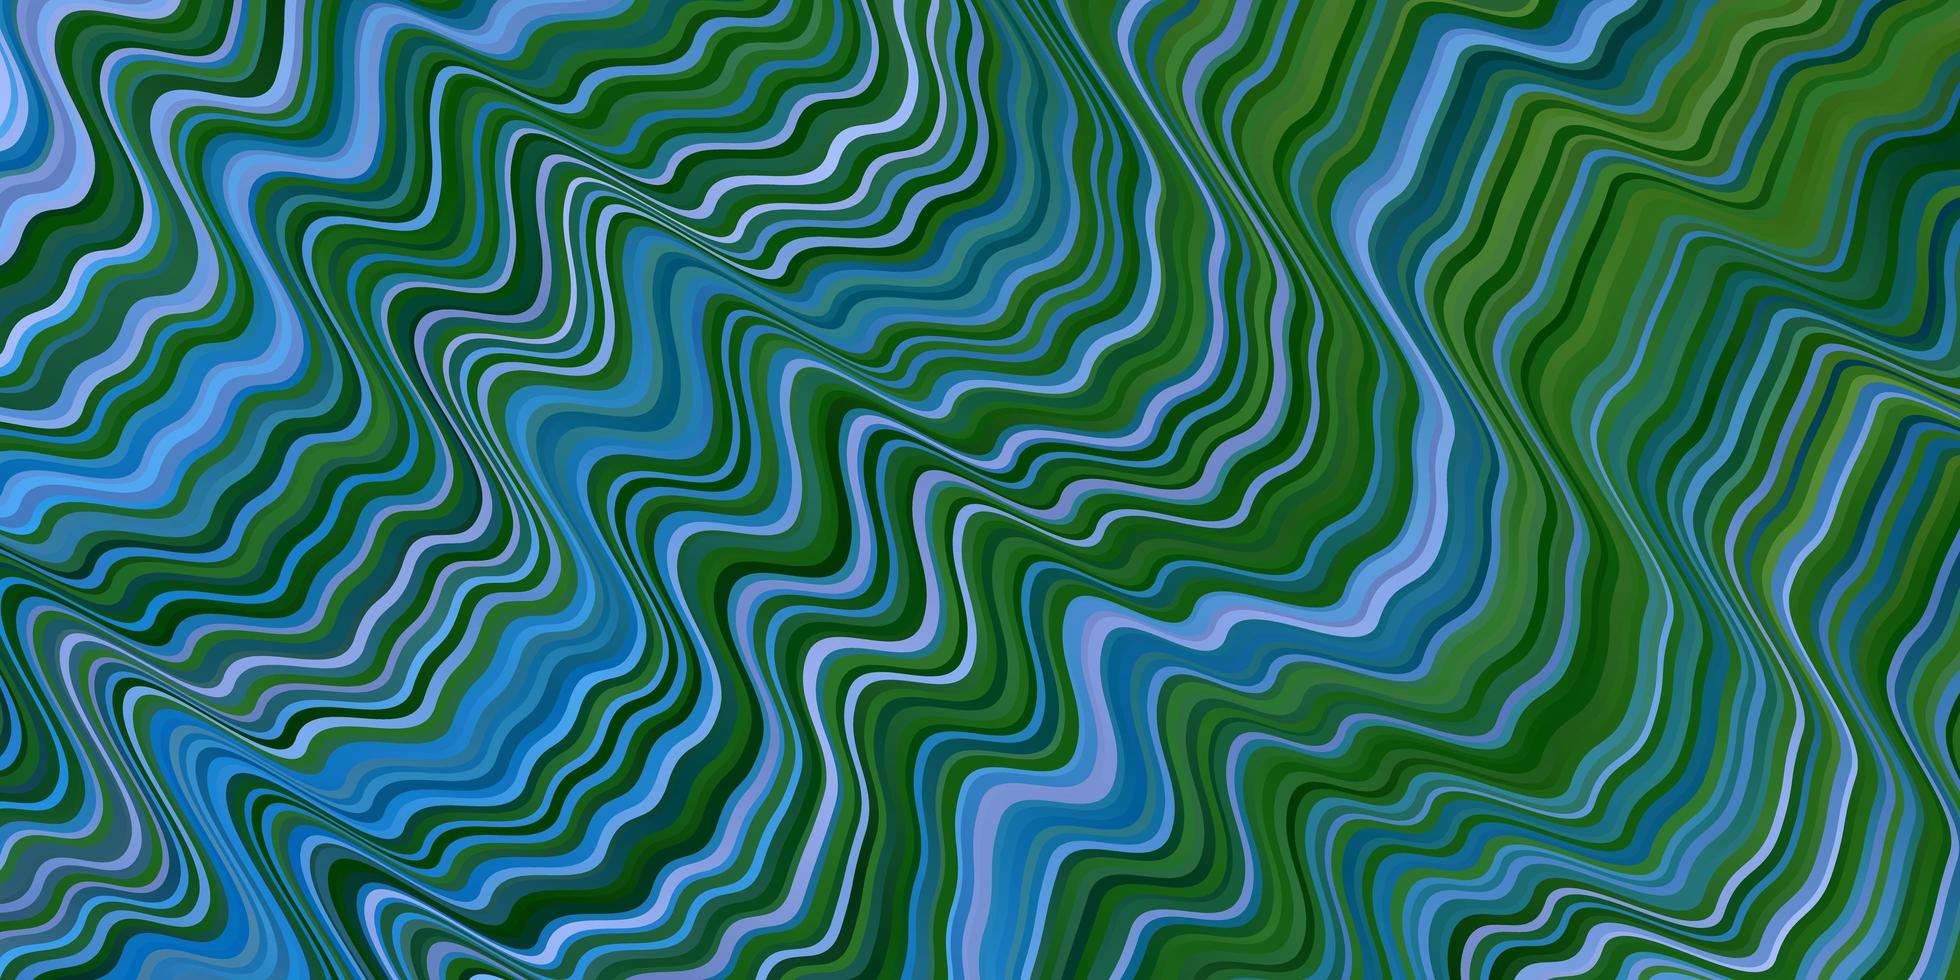 fond de vecteur bleu clair avec des lignes illustration abstraite colorée avec motif de courbes dégradées pour les dépliants de brochures d'entreprise